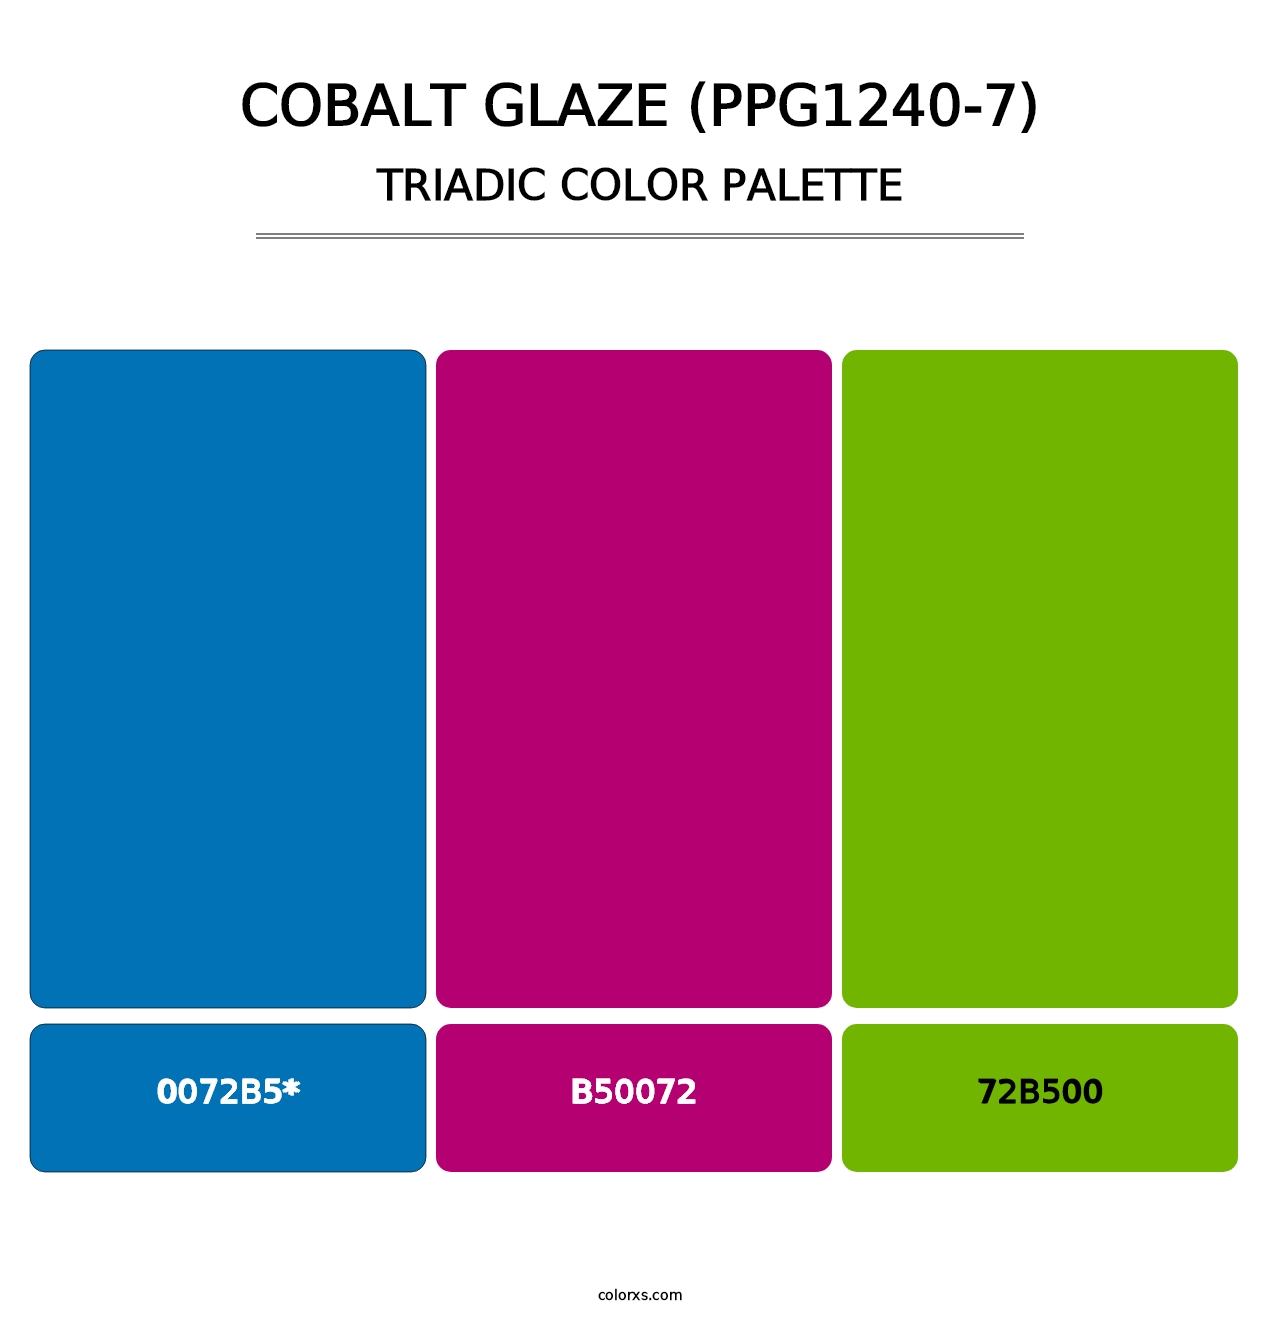 Cobalt Glaze (PPG1240-7) - Triadic Color Palette